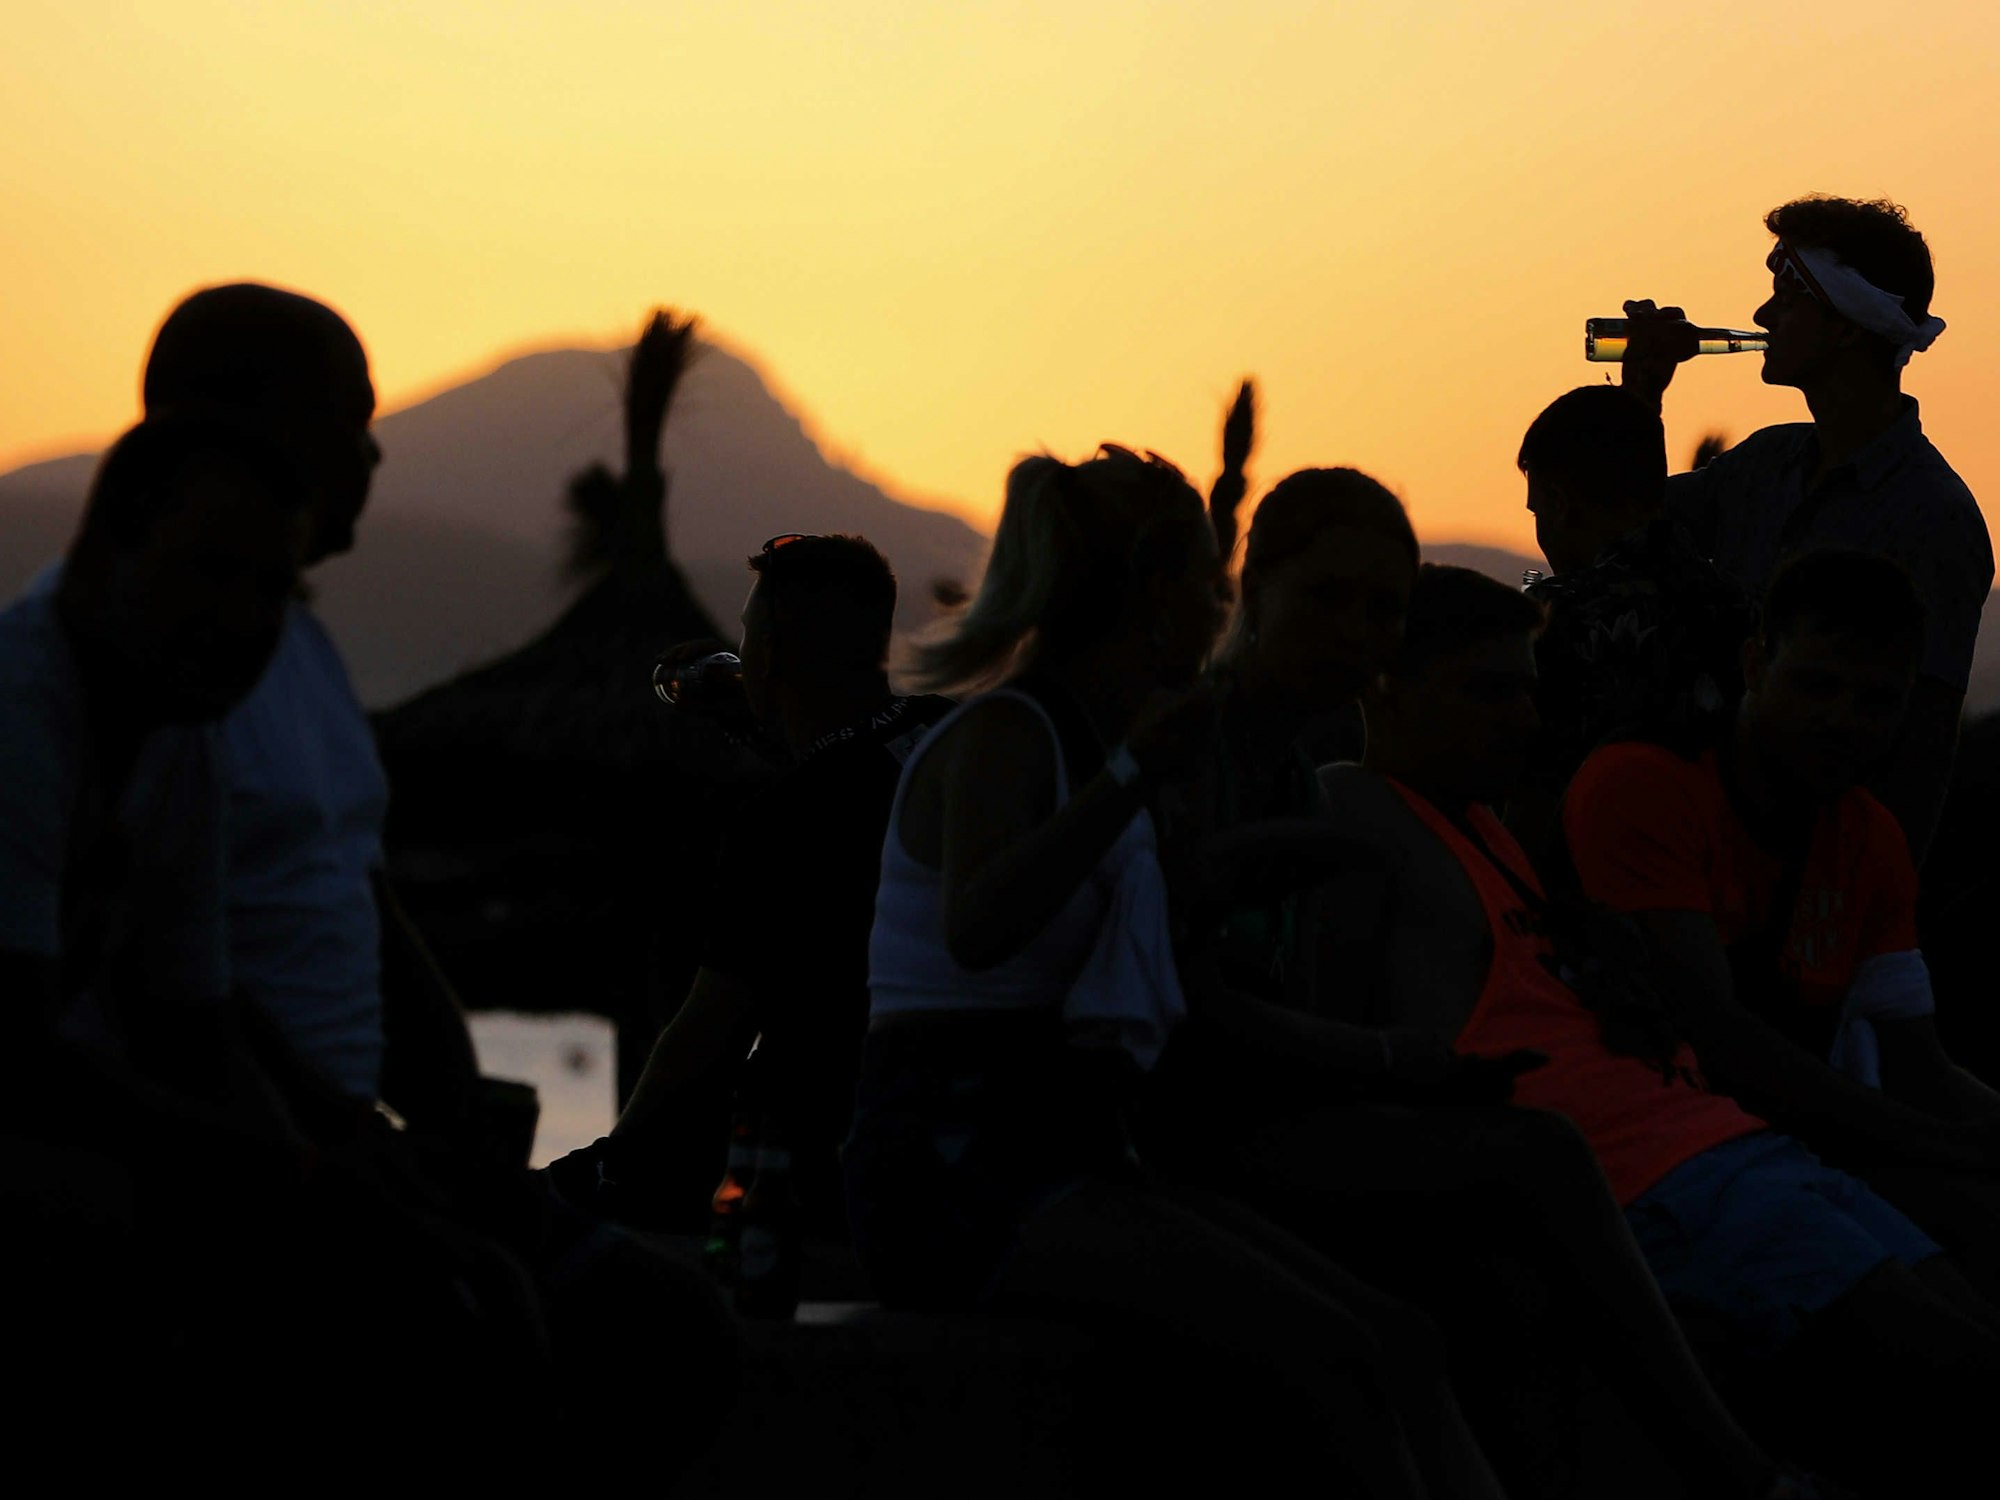 Vorwiegend junge Leute feiern bei Sonnenuntergang am Strand von Arenal am Party-Viertel Ballermann auf Mallorca.